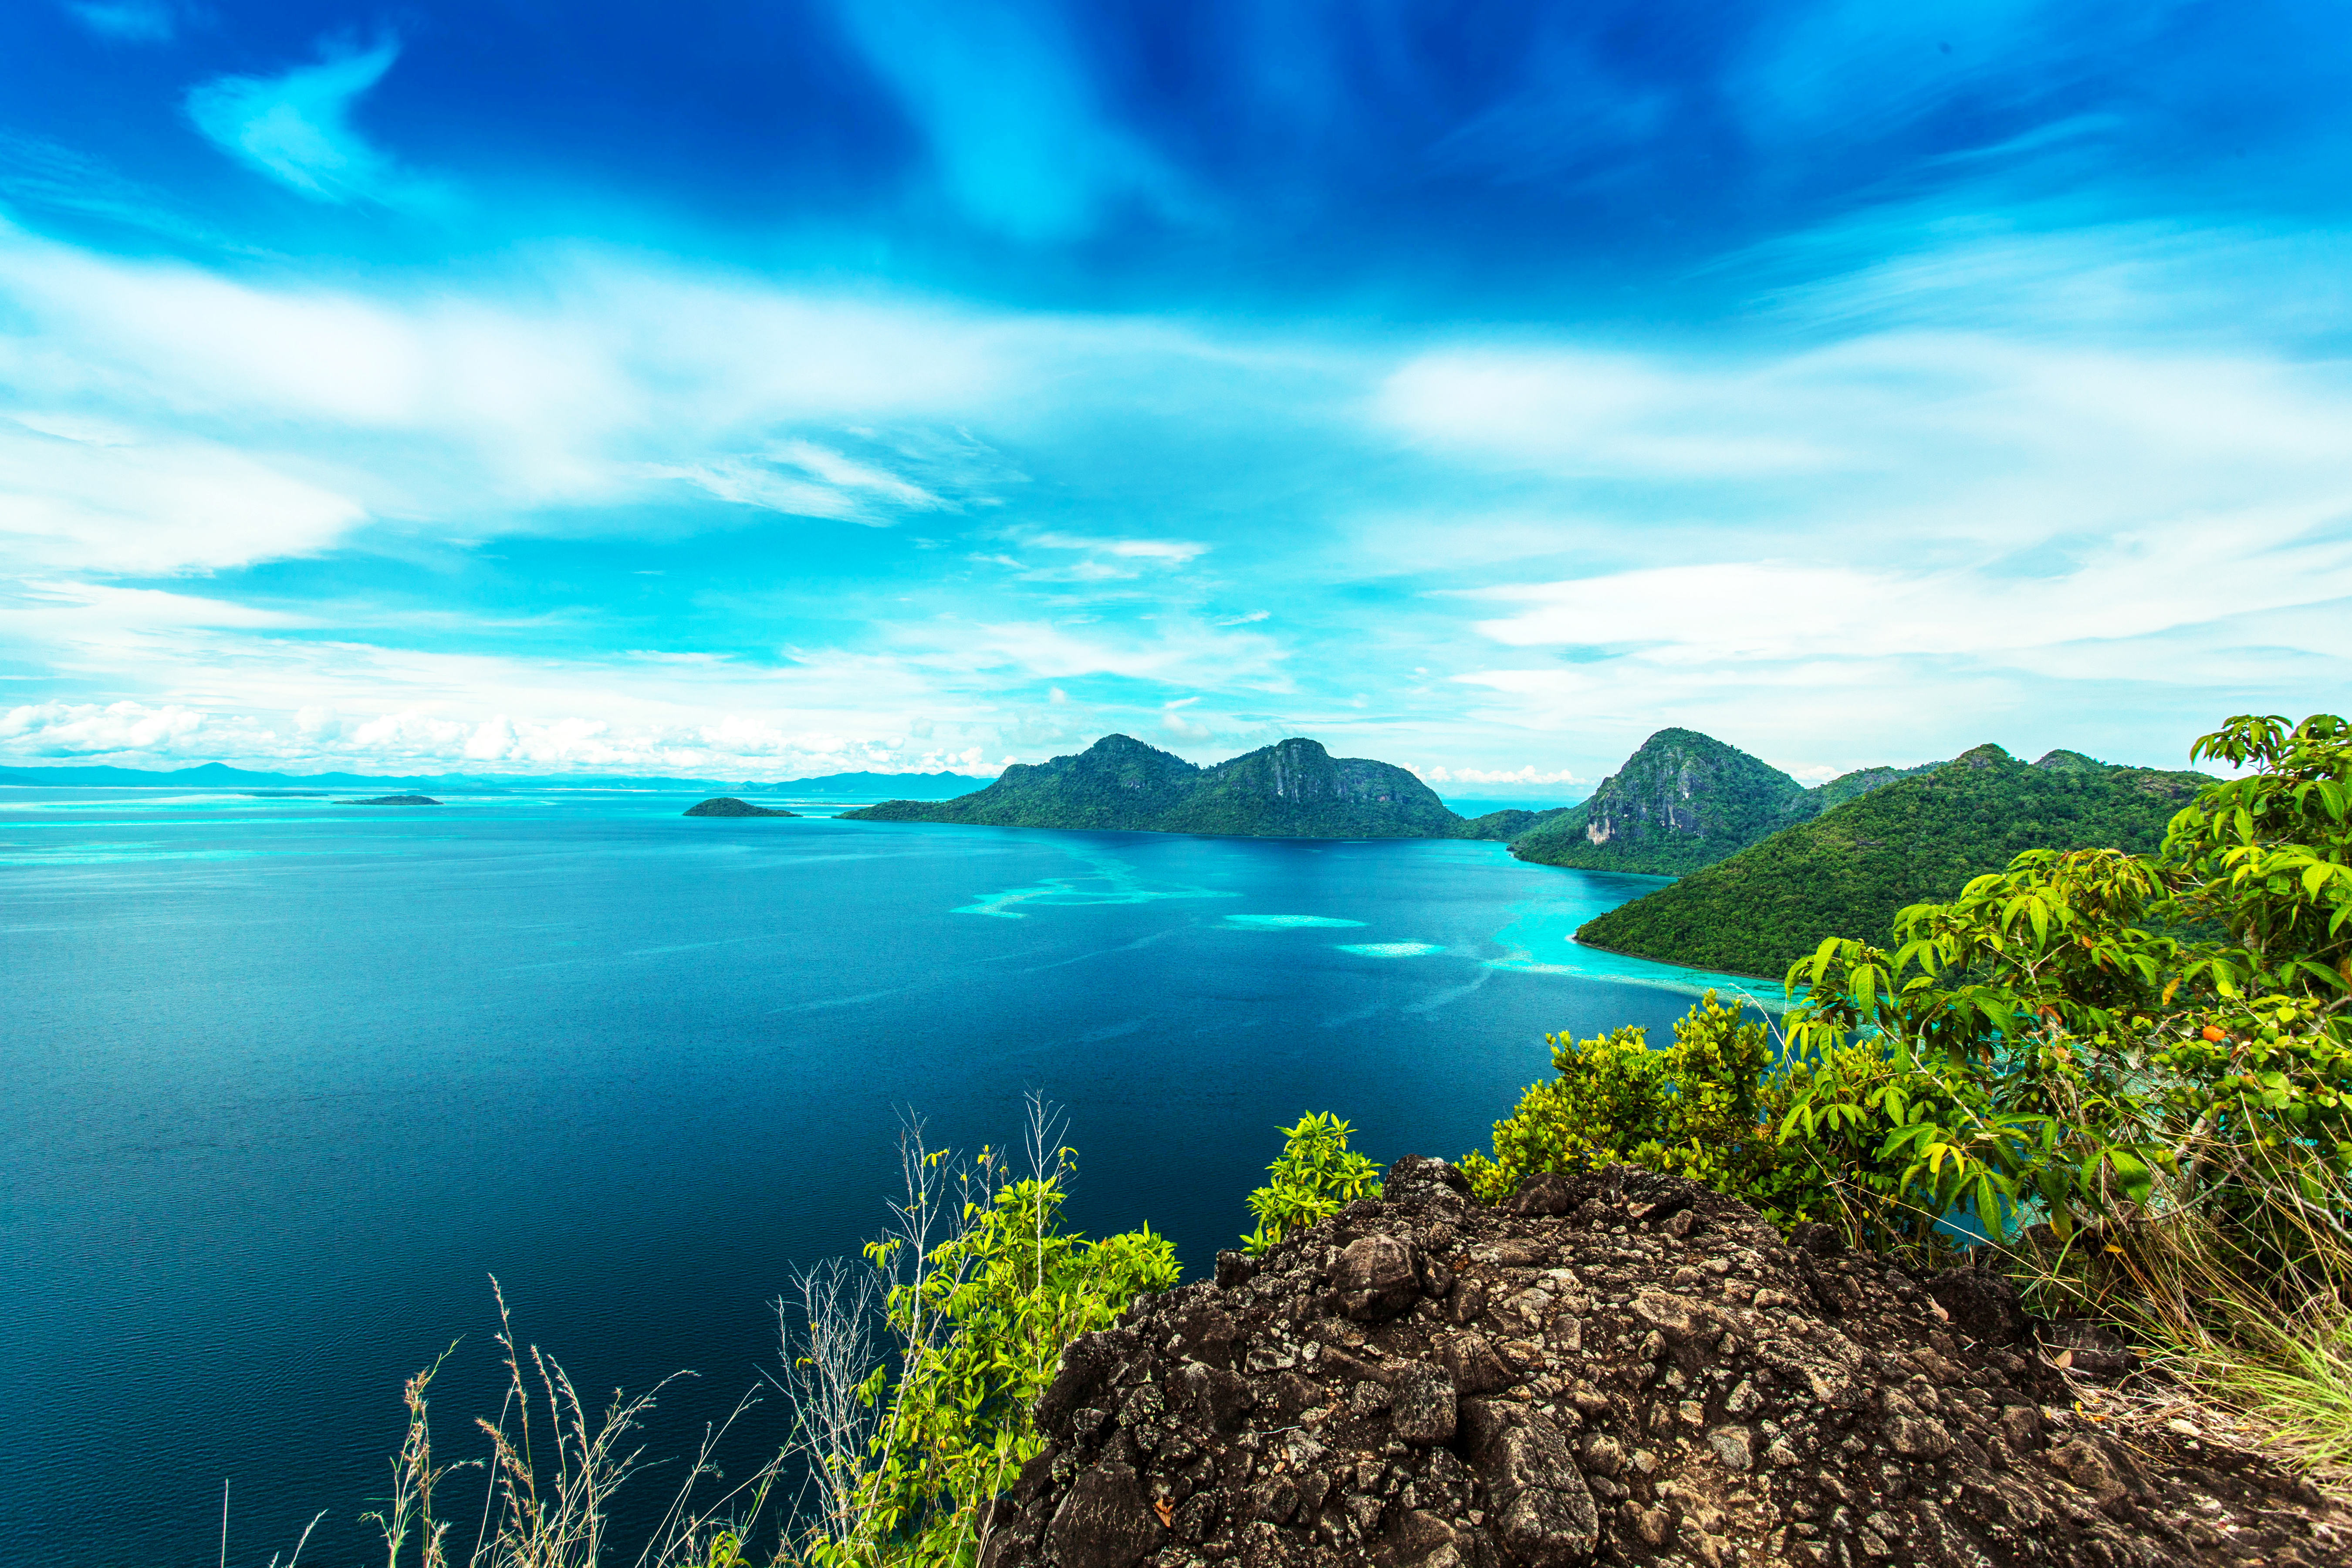 Скачать обои Остров Дуланг на телефон бесплатно